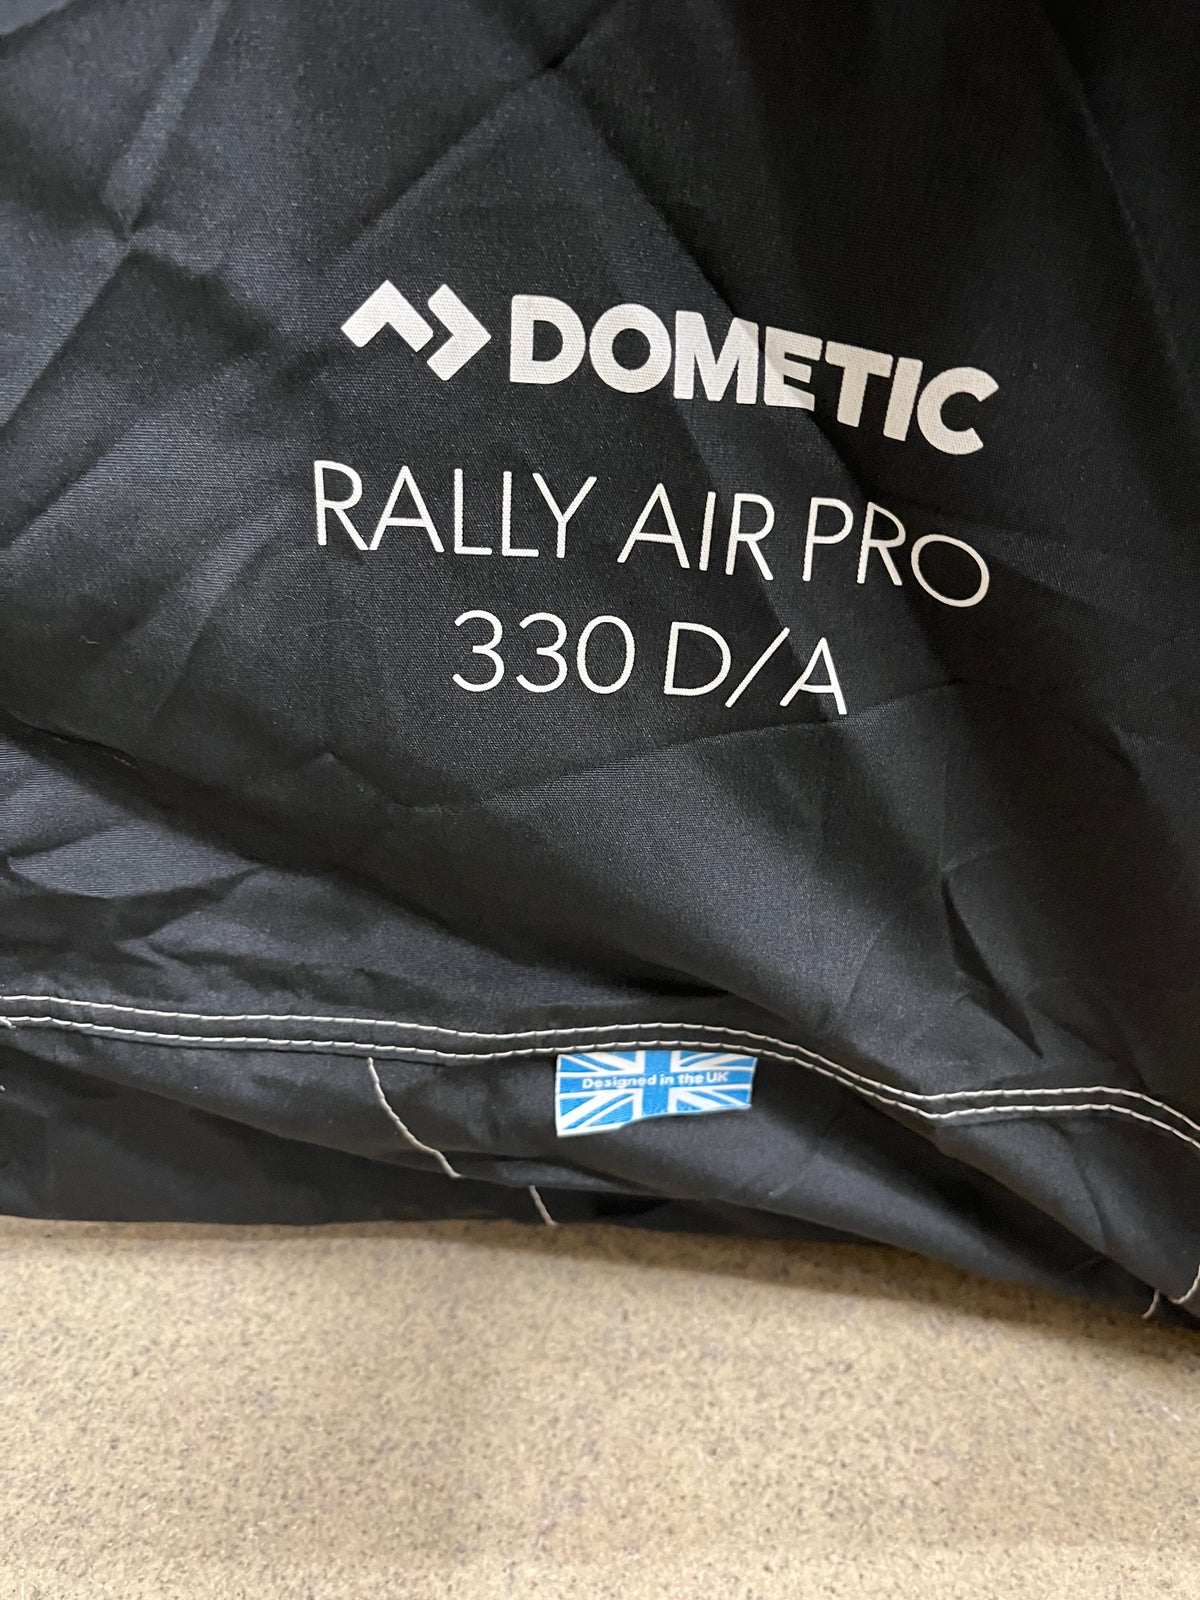 Dometic RALLY AIR PRO D/A 330 Dometic RALLY AIR PRO 330 D/A,